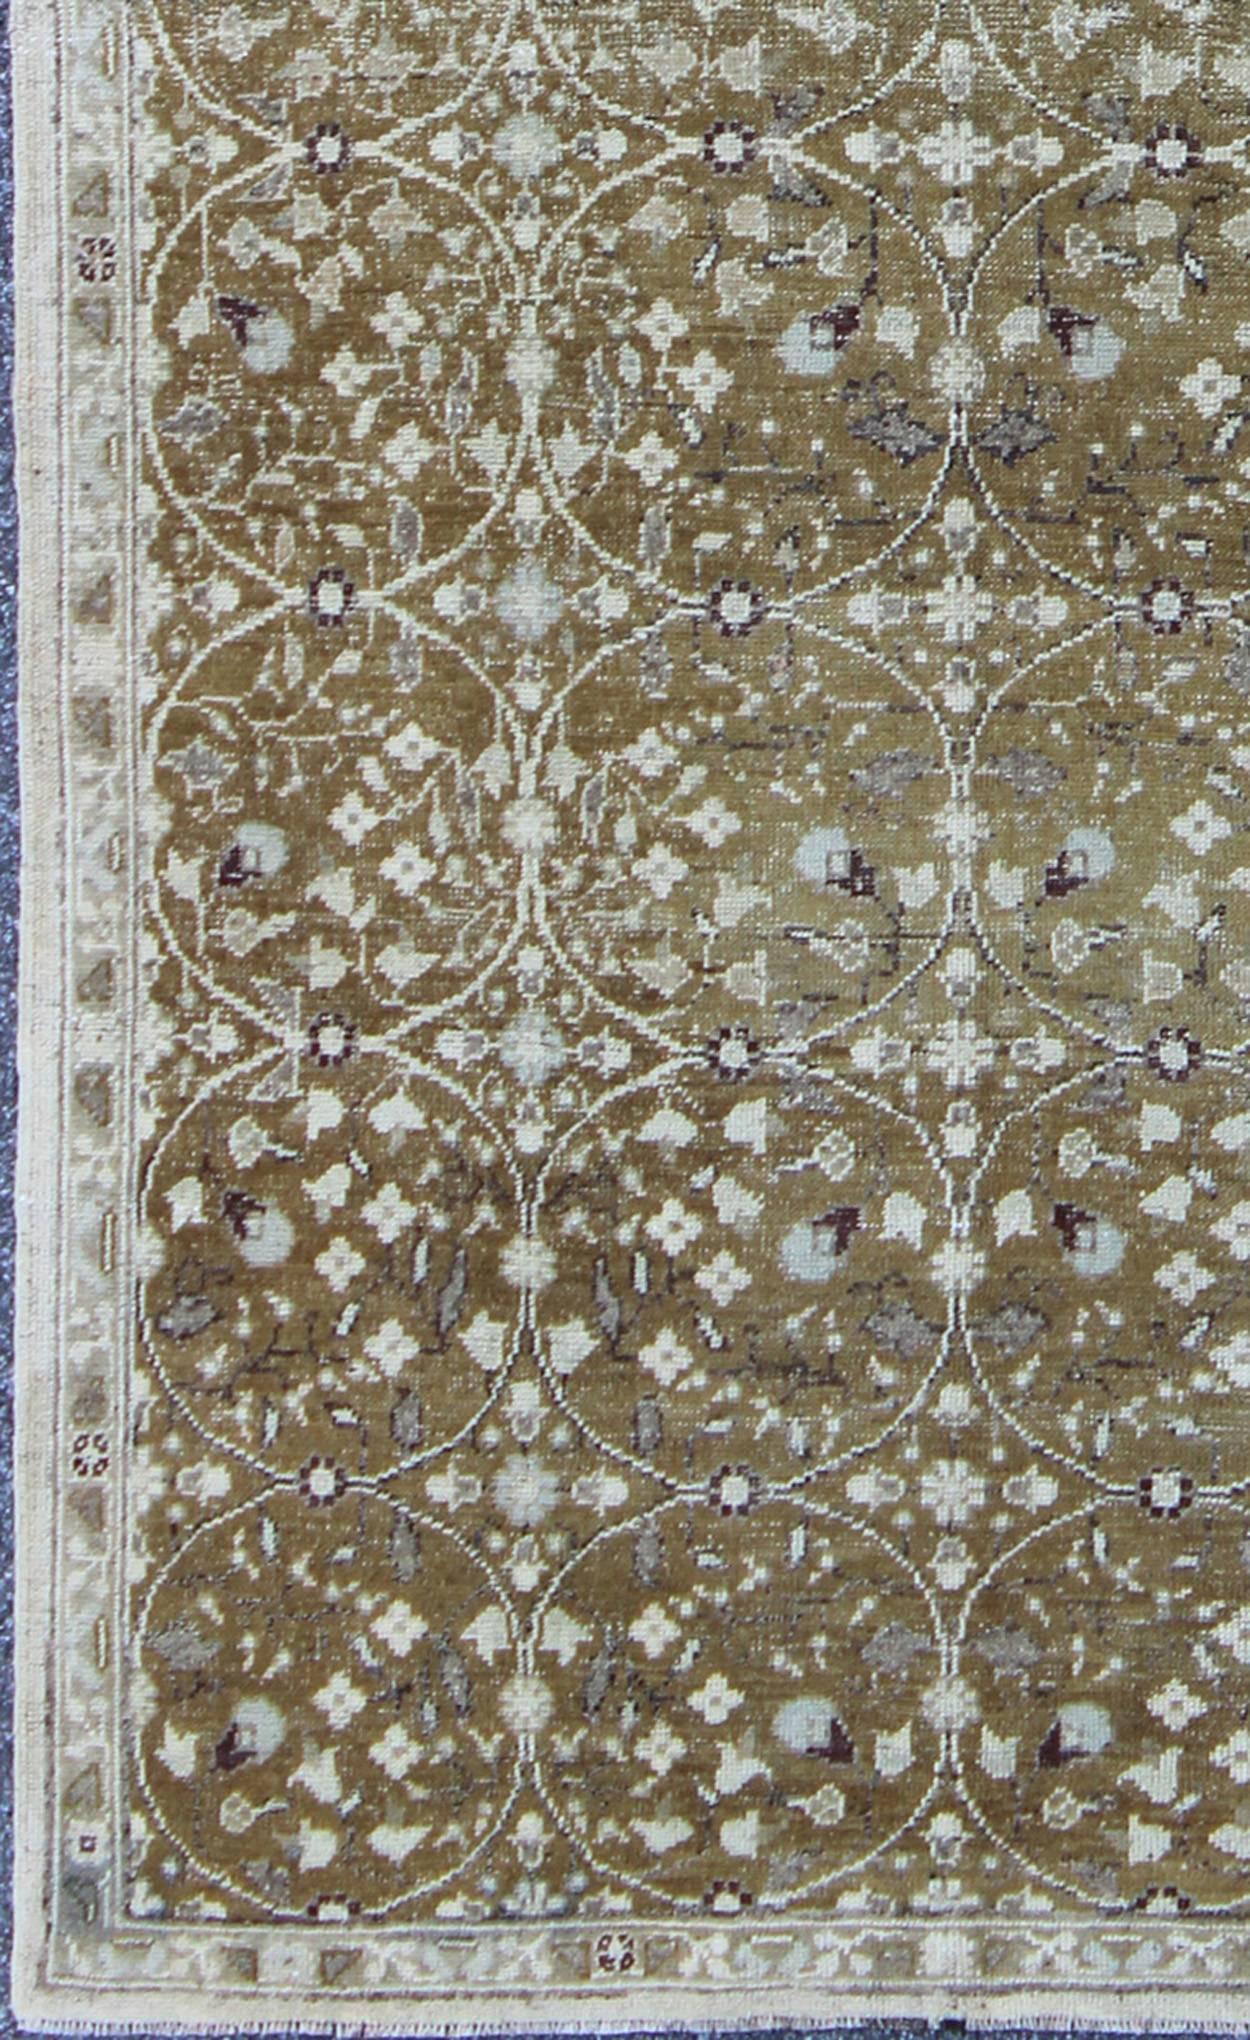 Tapis Oushak antique à motifs de fleurs en ivoire et vert olive, tapis EN-141498 pays d'origine / type : Turquie / Oushak, vers le deuxième quart du 20ème siècle.                      

Fabriqué dans la Turquie des années 1930, cet Oushak antique se